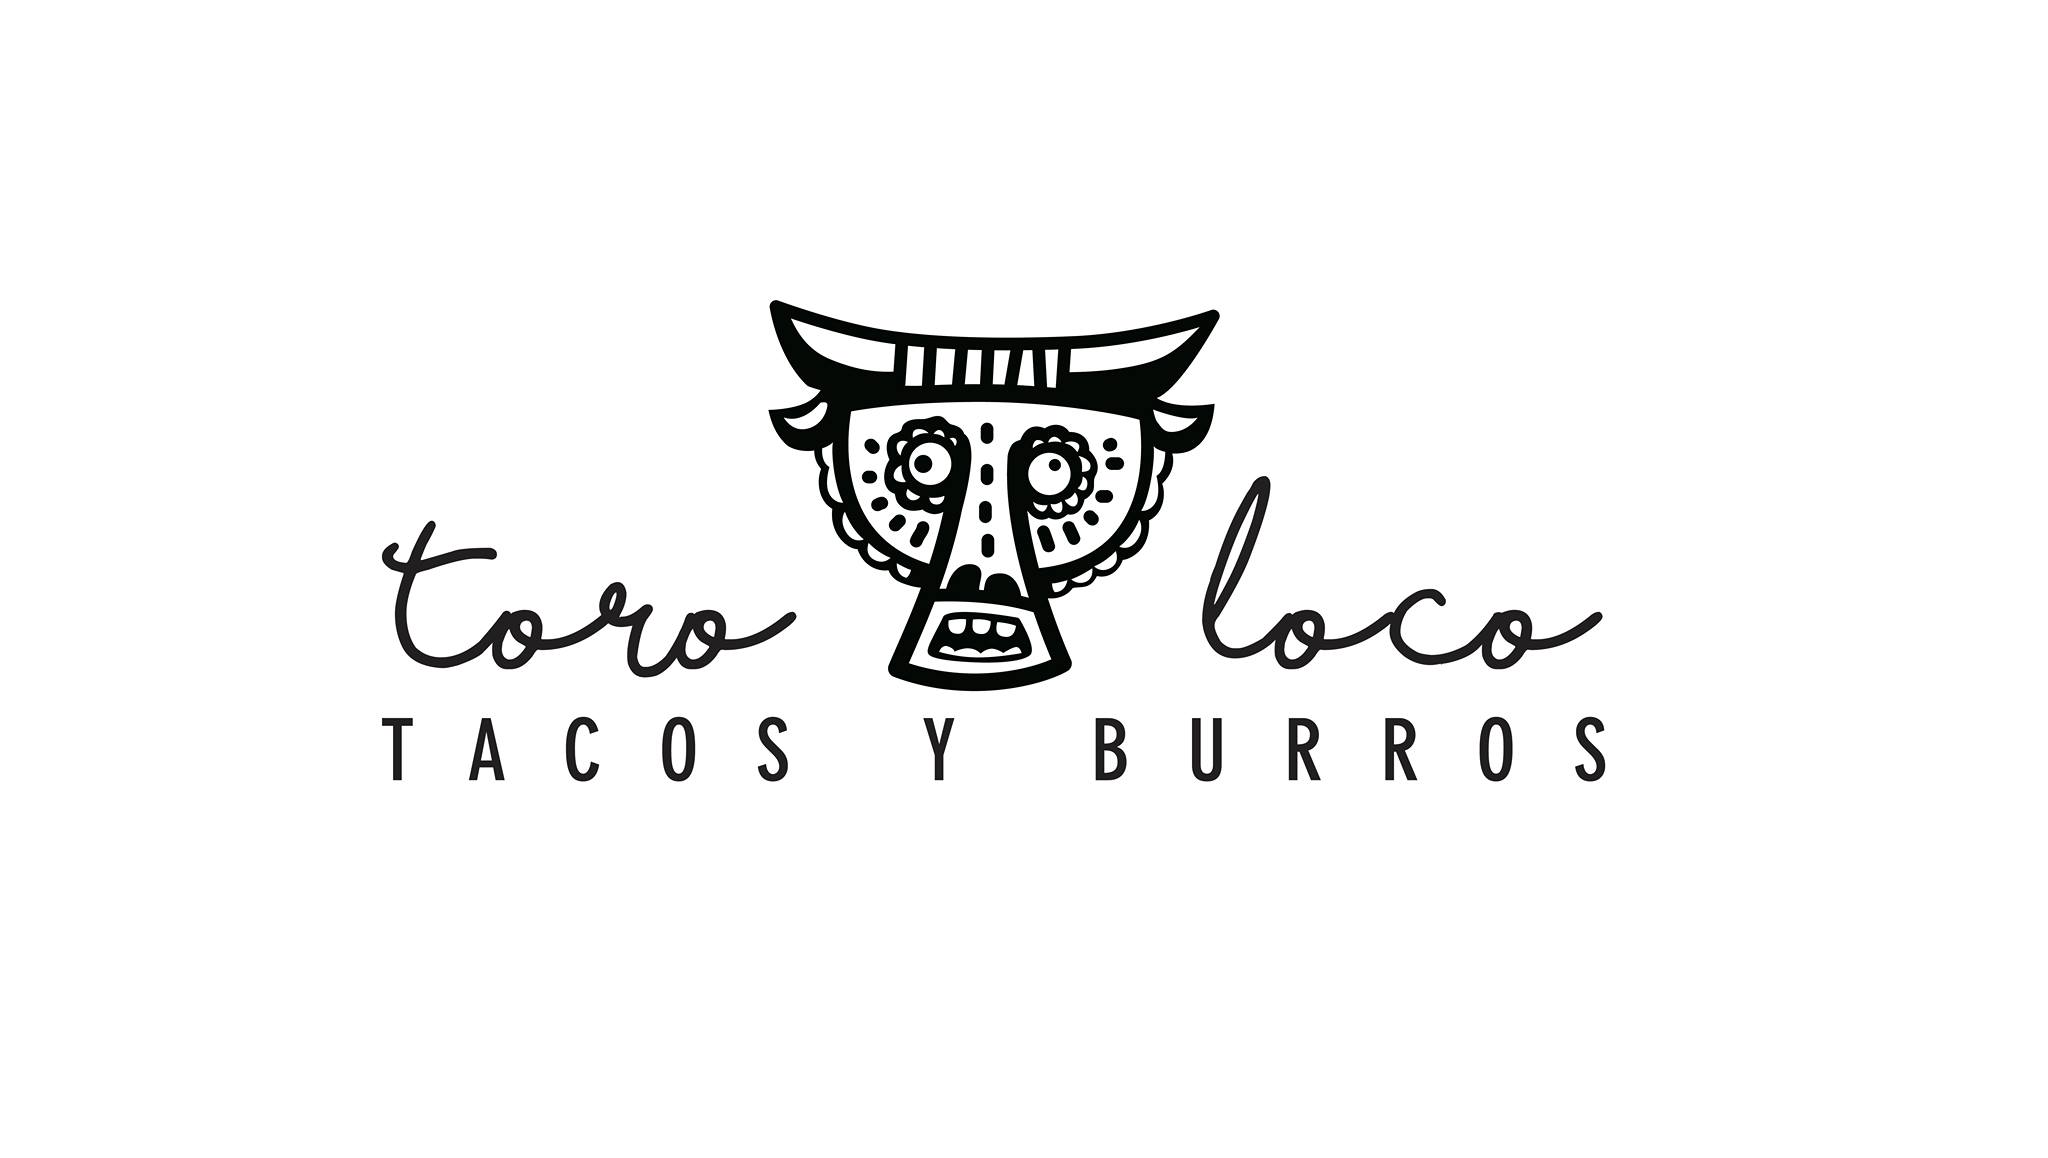 Toro Loco restaurant located in TUCSON, AZ